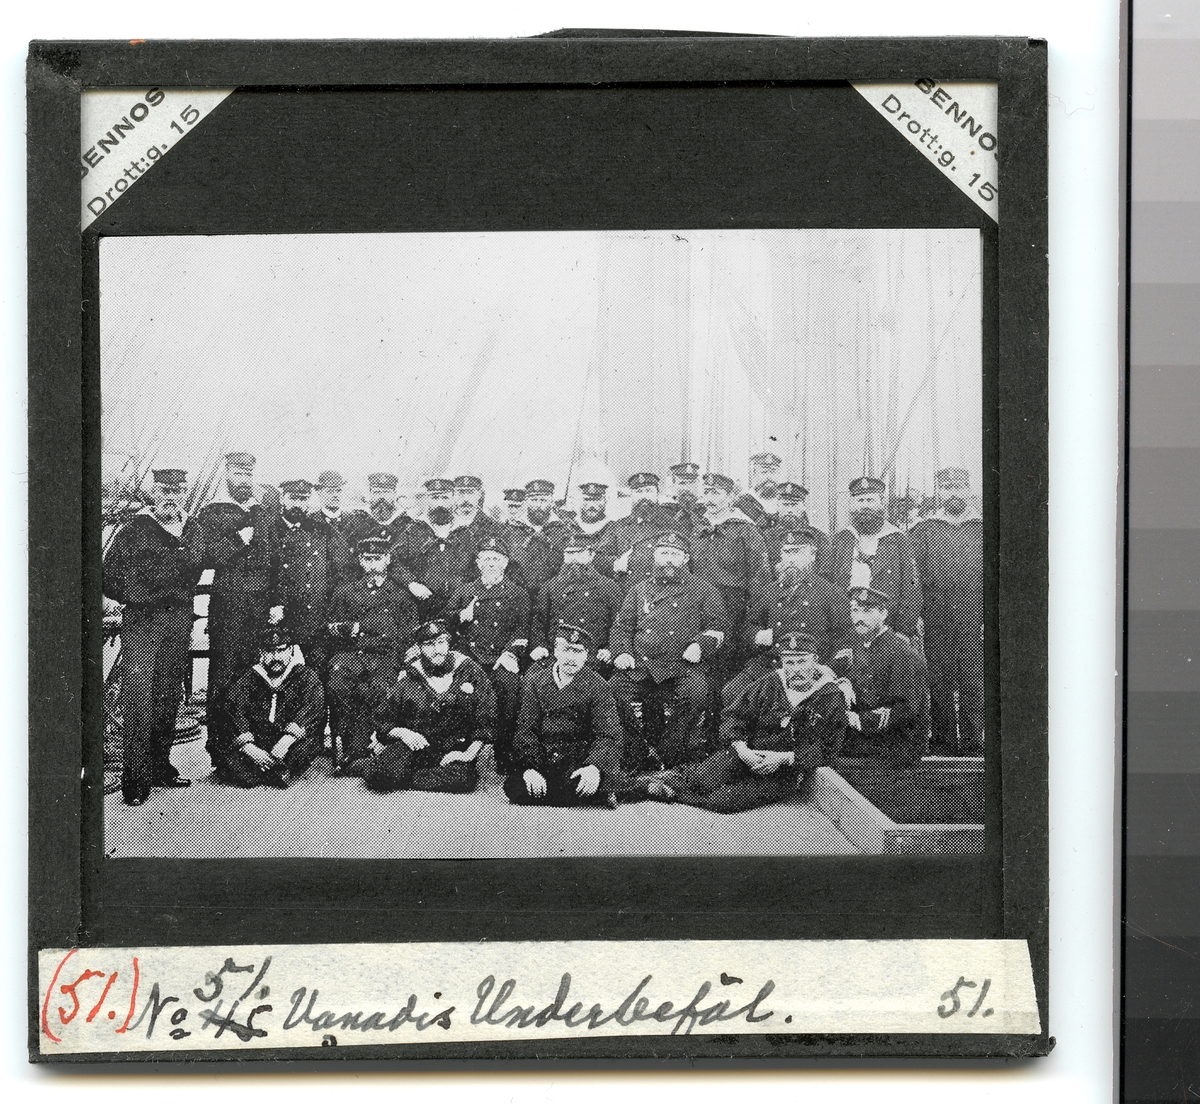 Denna grupporträtt visar underofficerare från fregatten Vanadis som har samlats för fotografering vid stormasten.